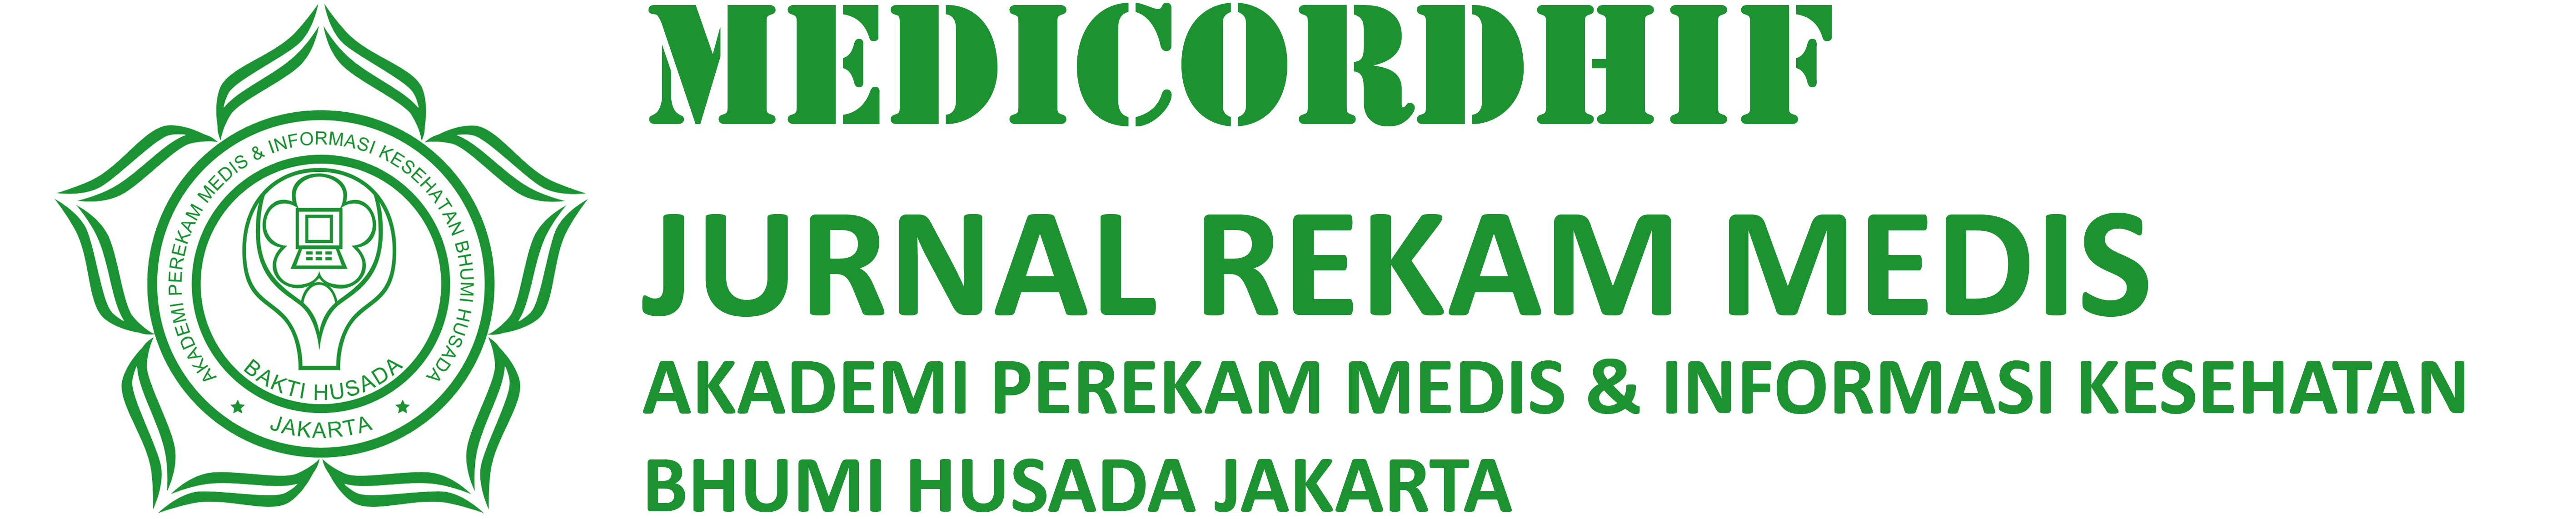 Medicordhif Jurnal Rekam Medis Akademi Perekam Medis & Informasi Kesehatan Bhumi Husada Jakarta